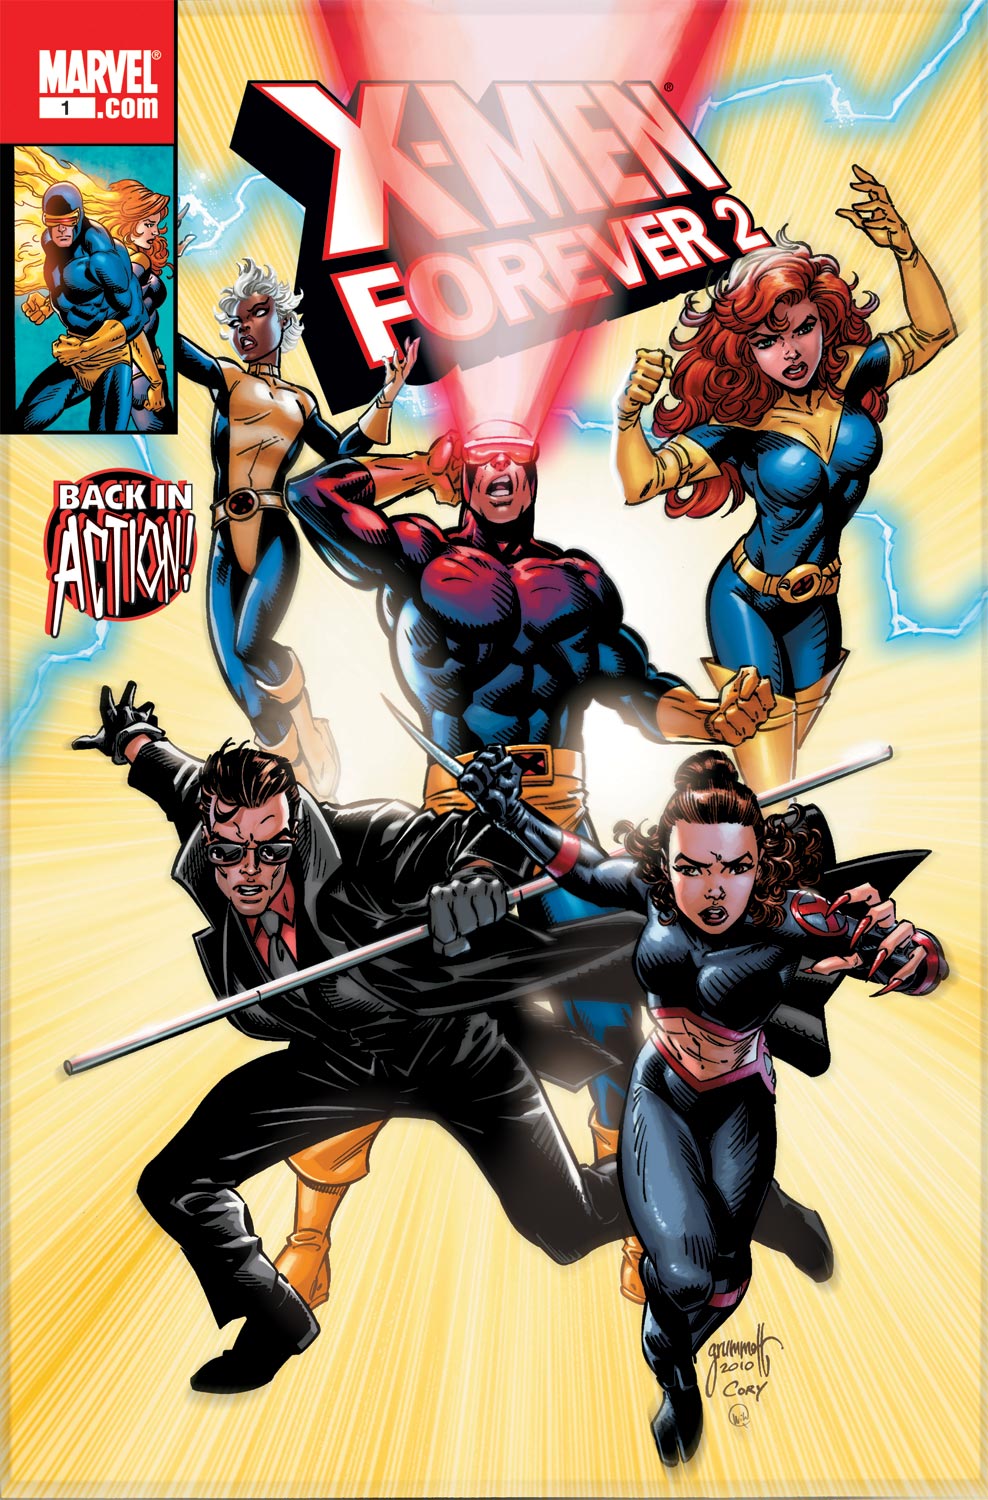 X-Men Forever 2 (2010) #1